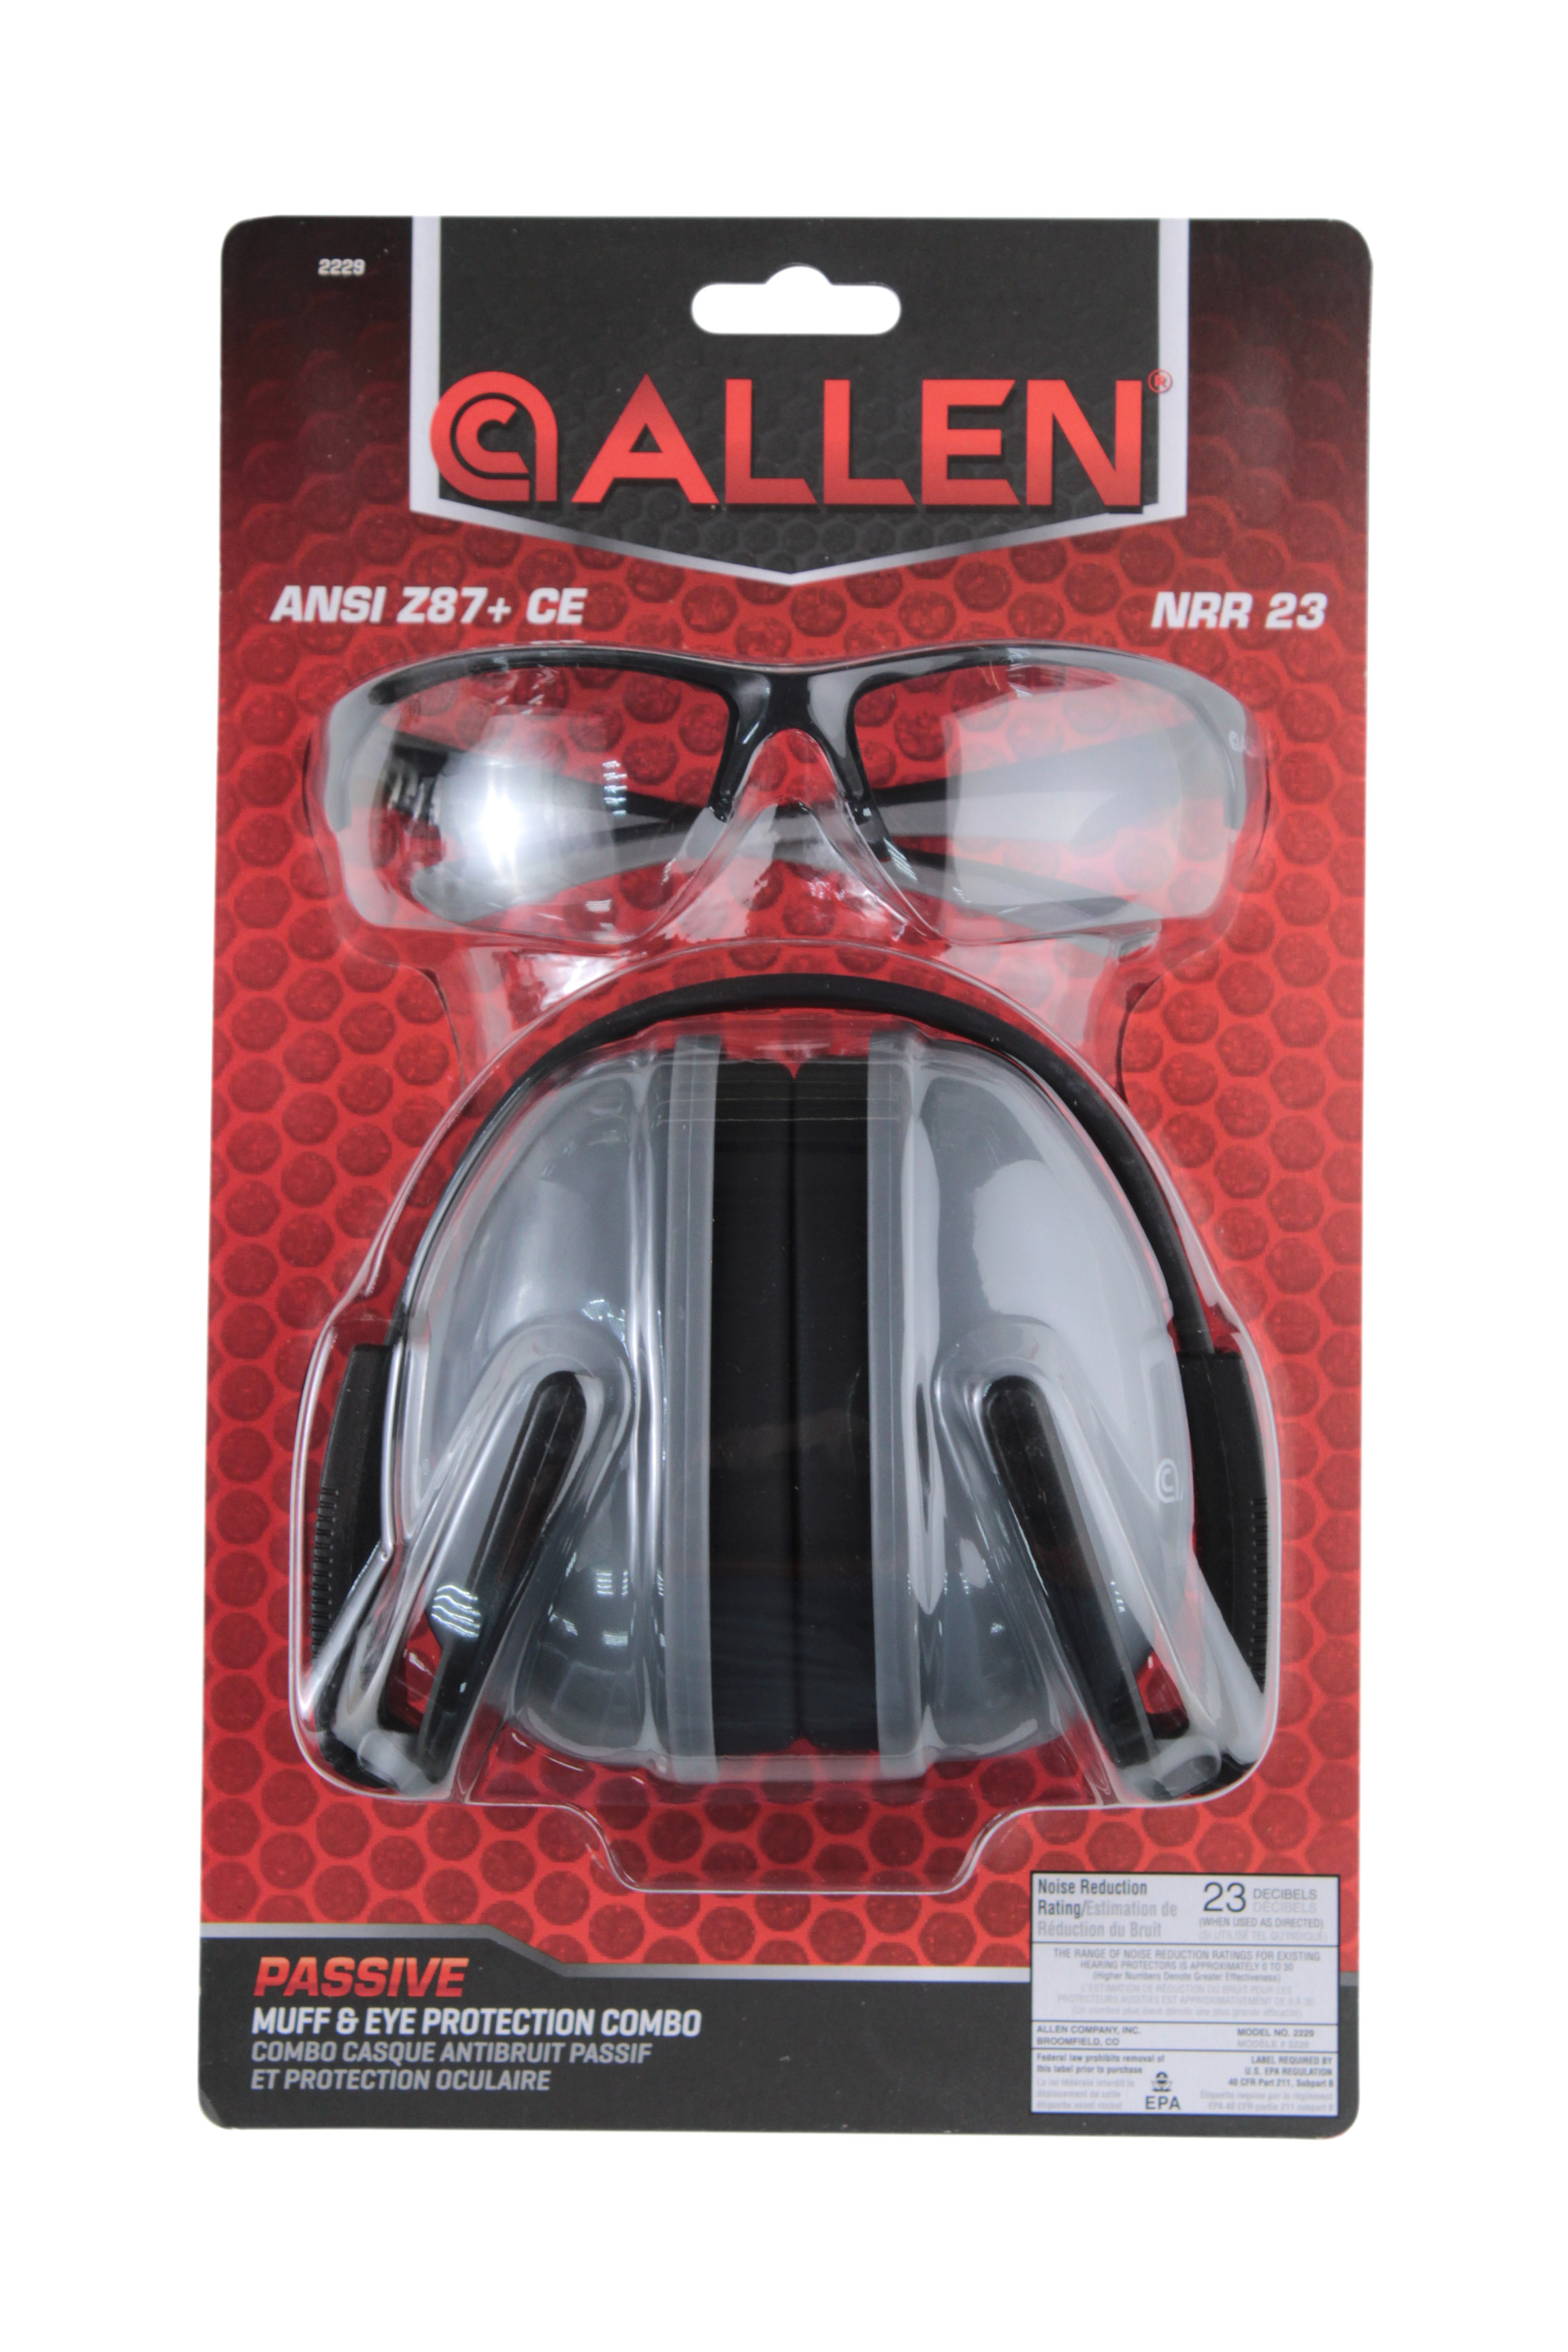 Комплект Allen Passive Muff Protection наушники + очки для стрельбы - фото 1